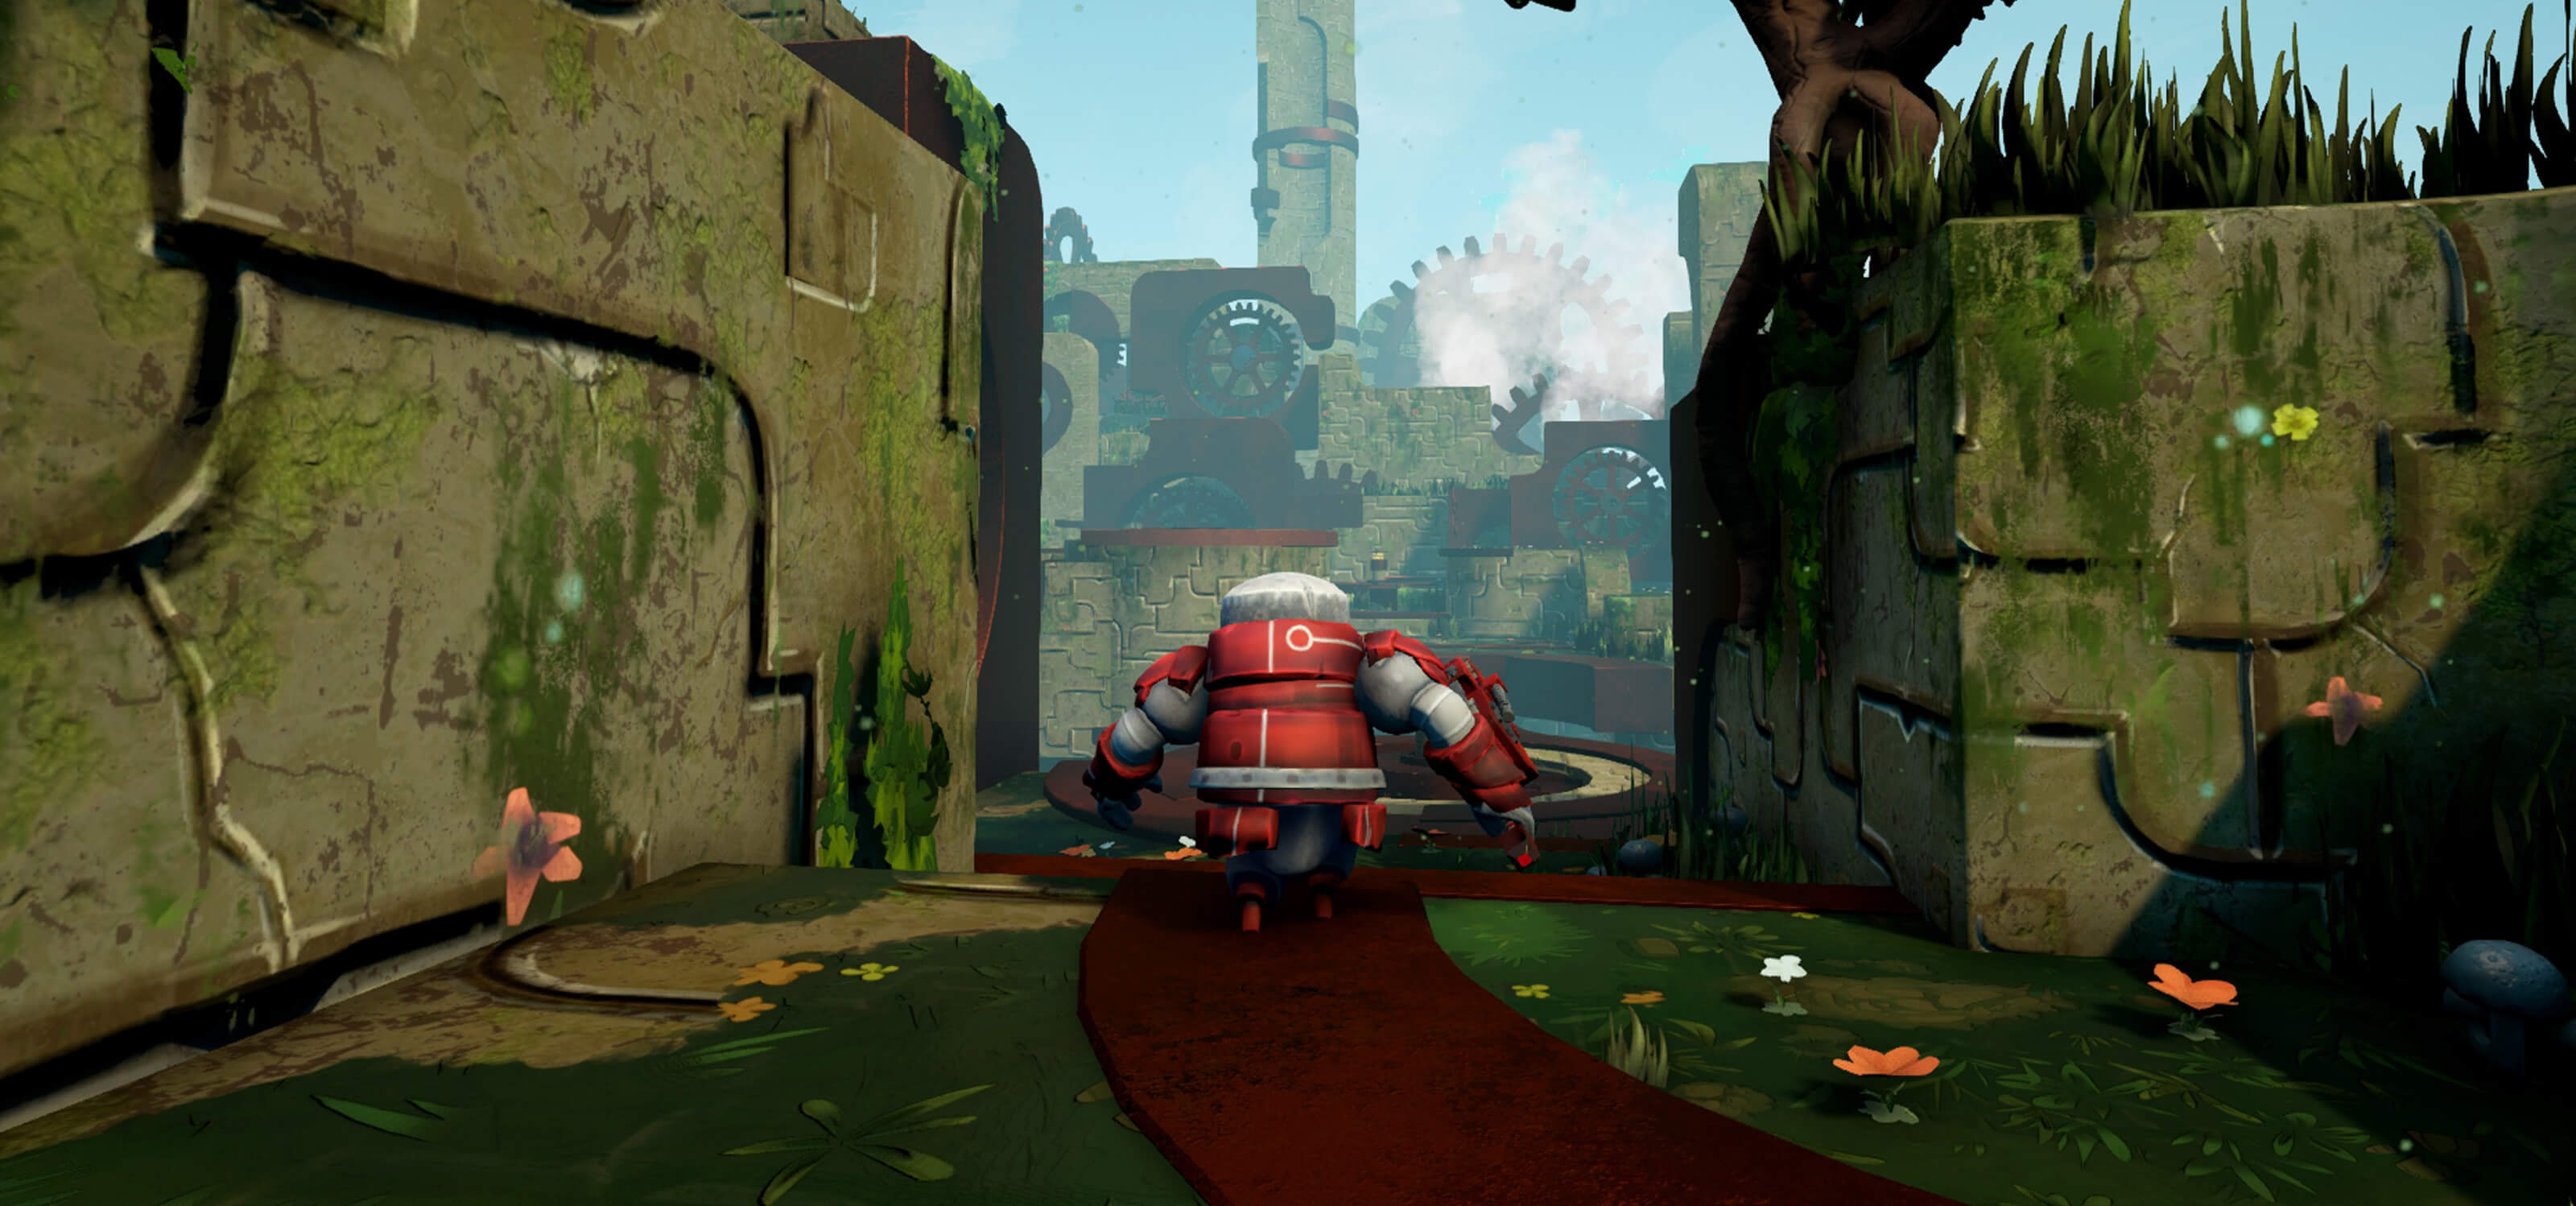 A red robot running through a clockwork world